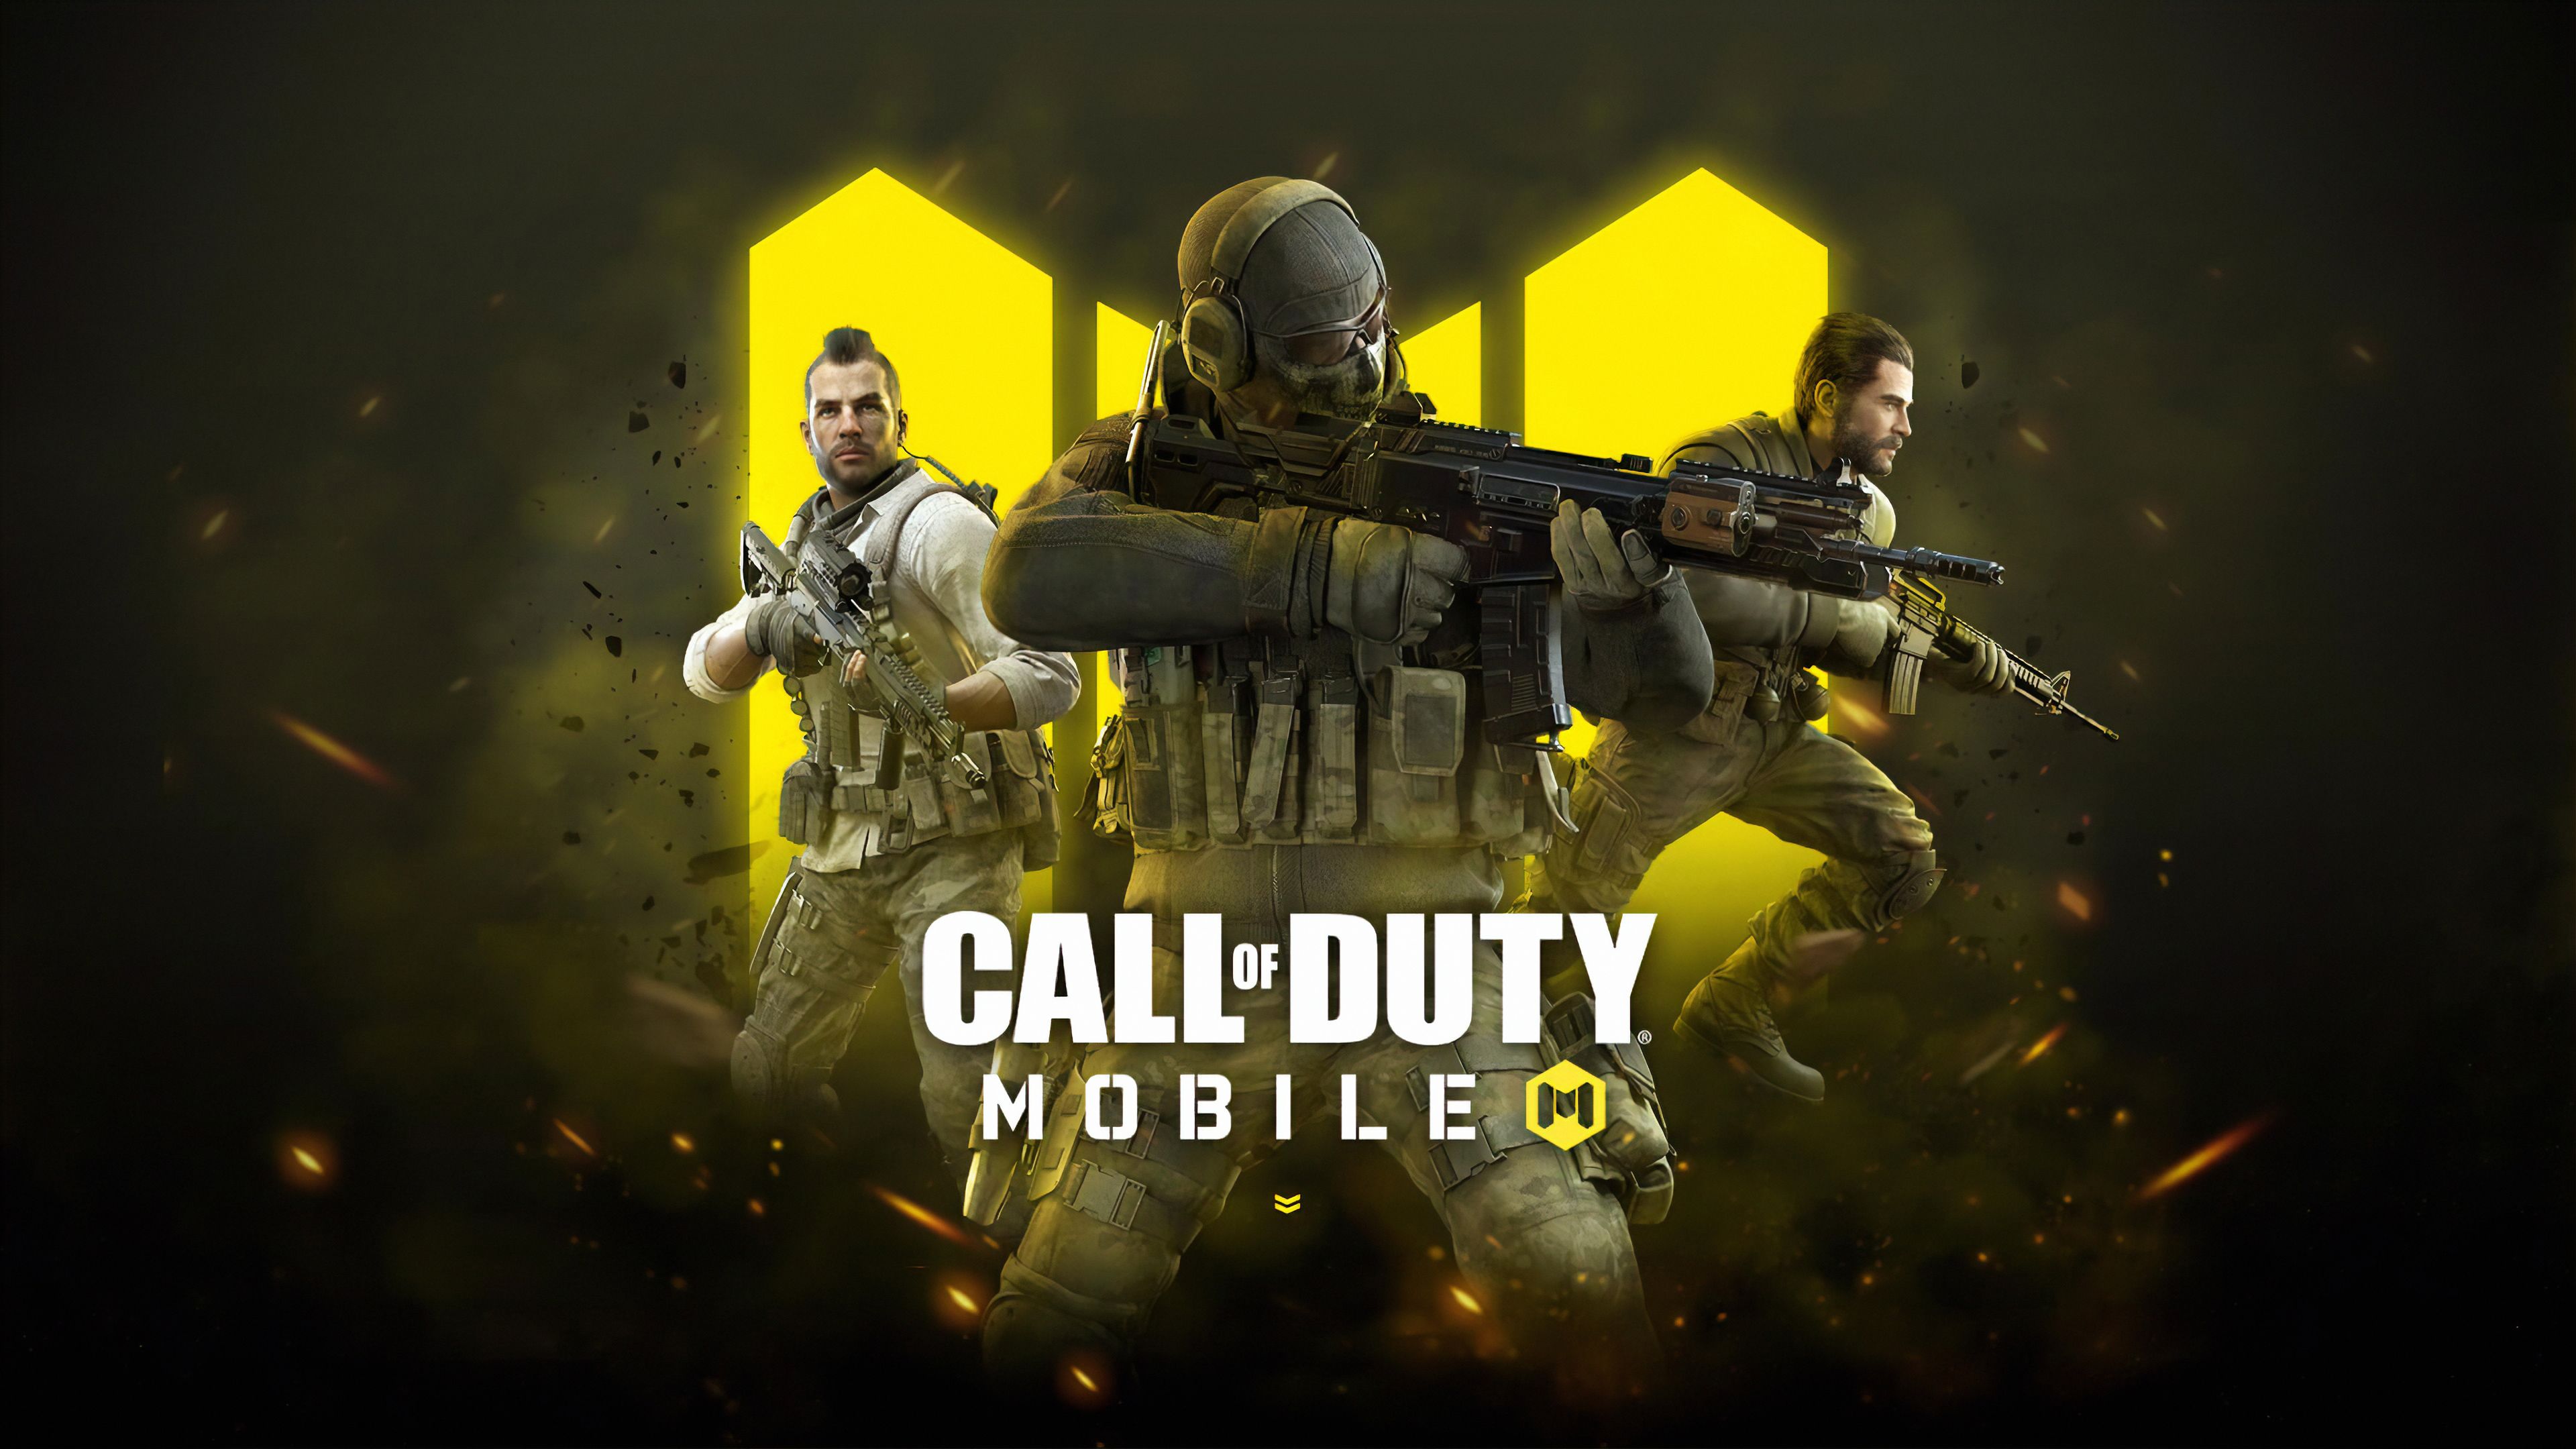 Call of Duty Mobile 4K Wallpaper #7.1332